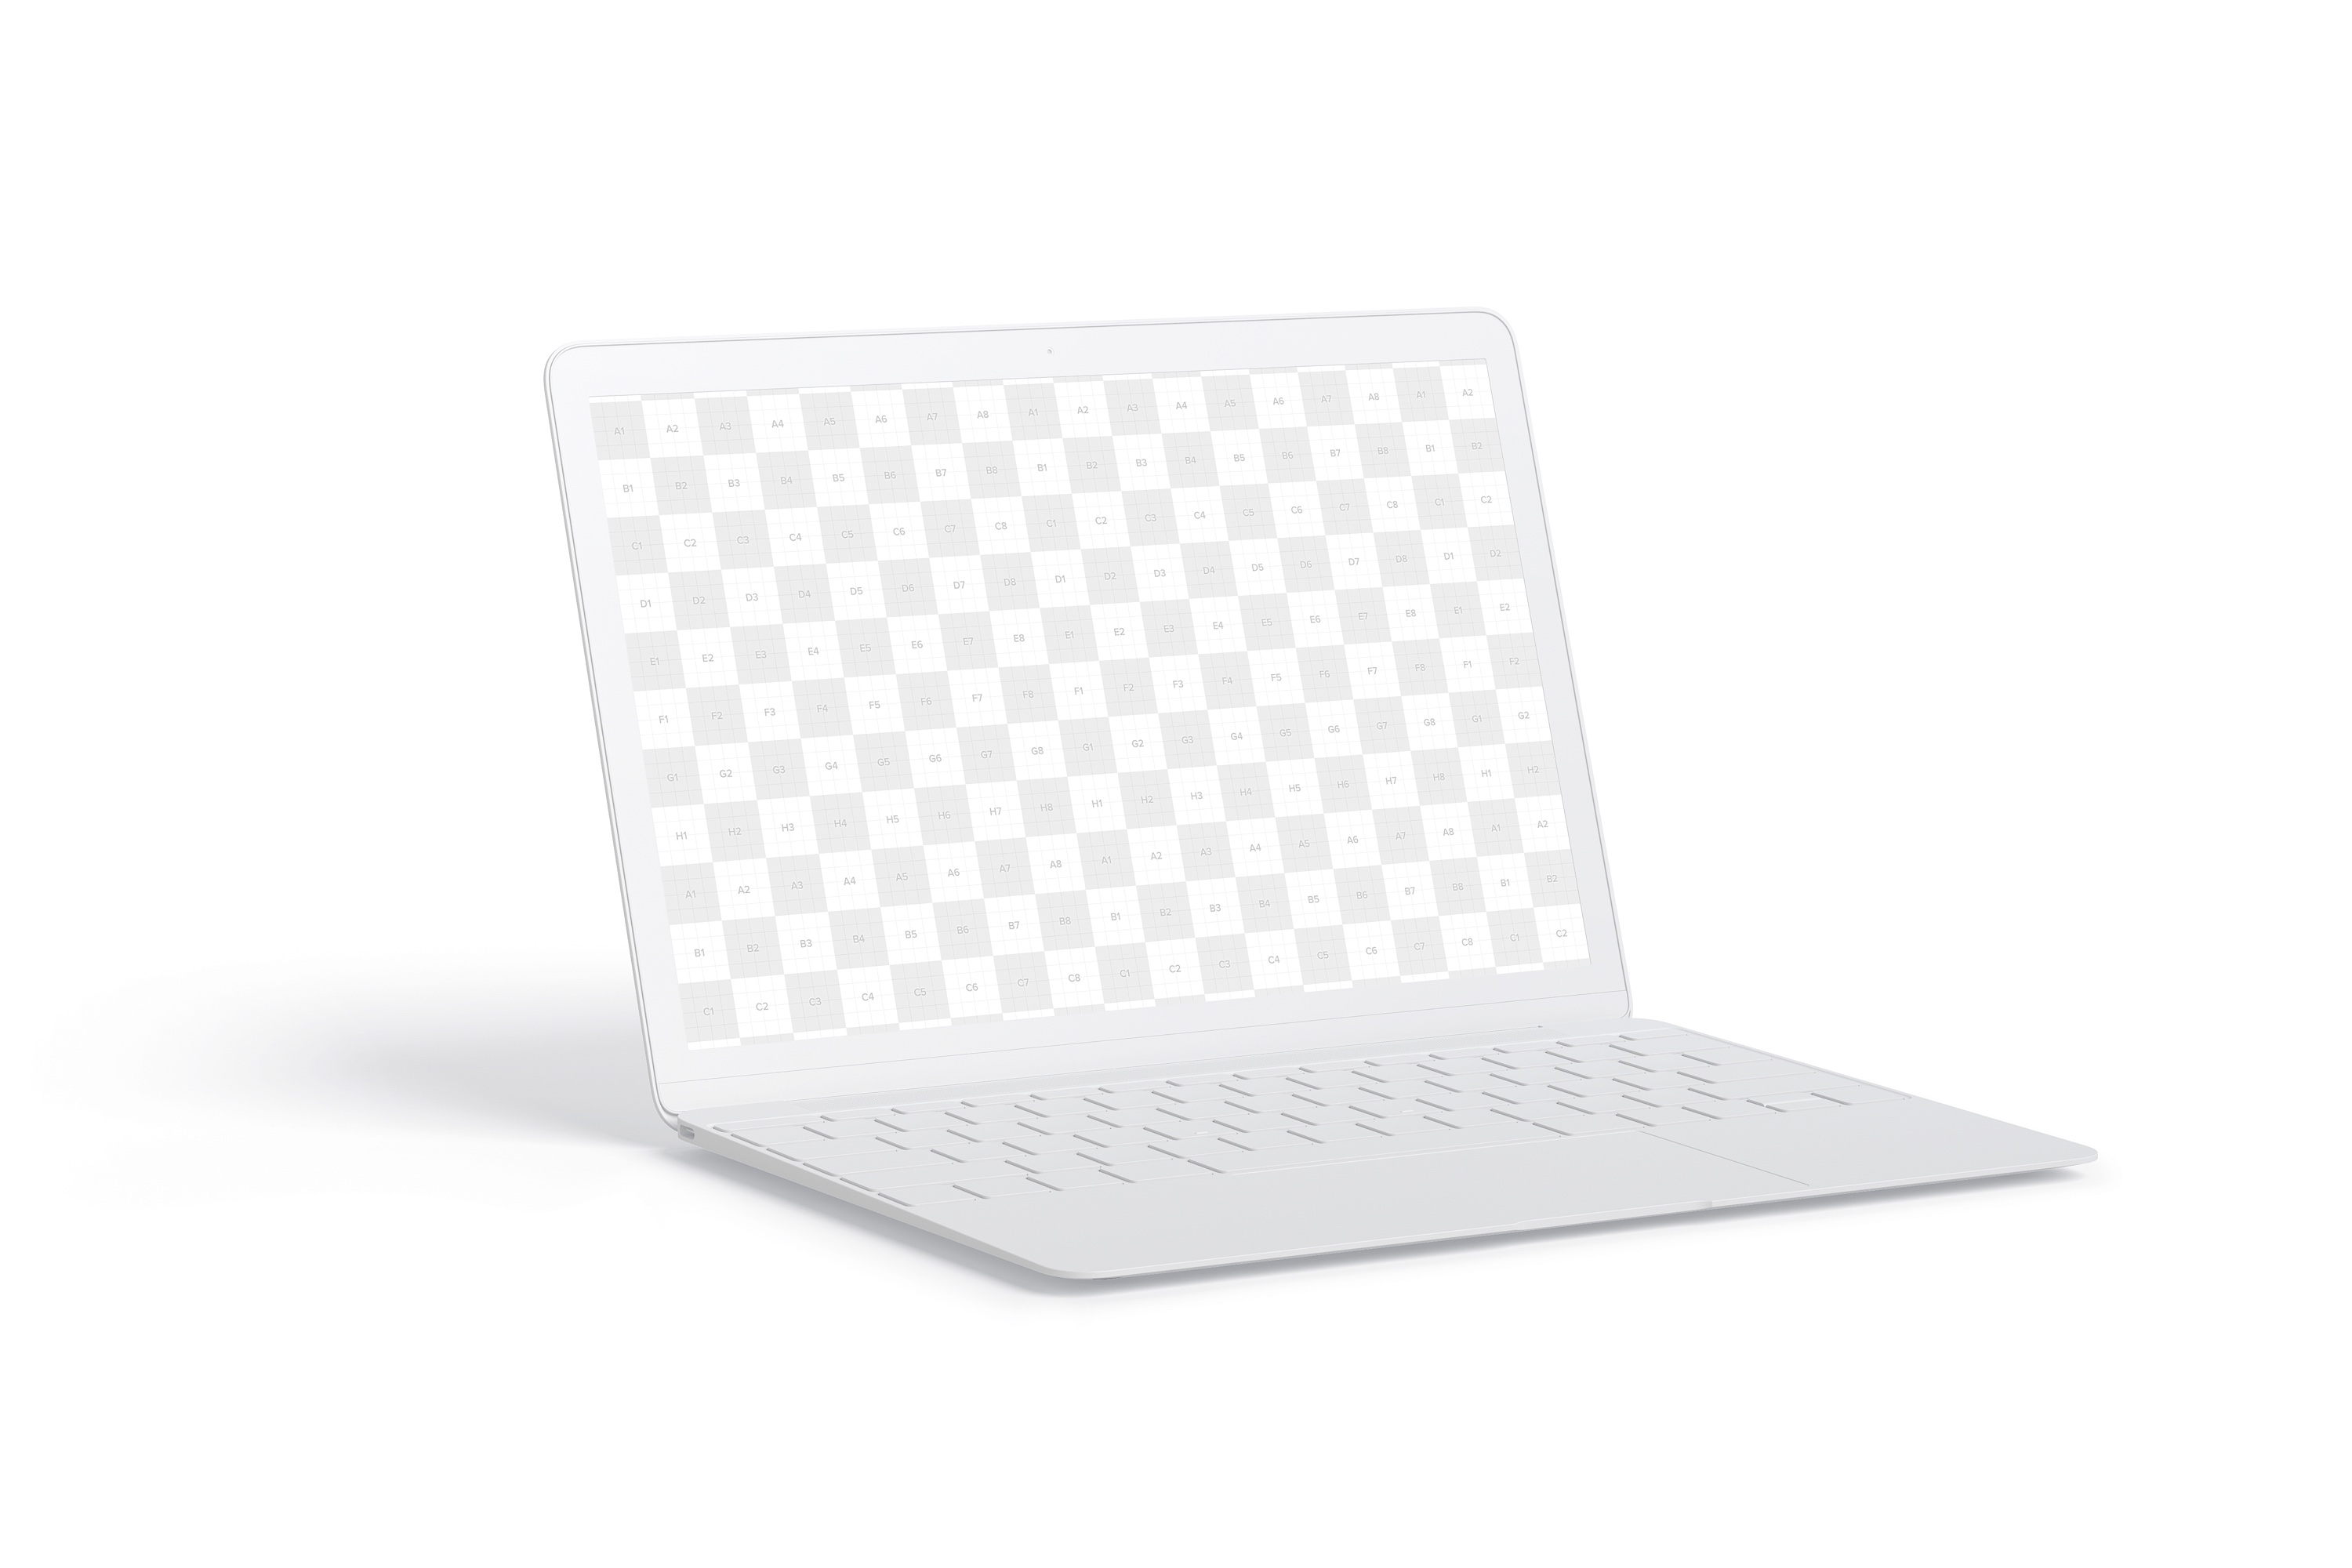 MacBook陶瓷黏土材质笔记本电脑UI设计预览左视图样机 Clay MacBook Mockup, Left View插图